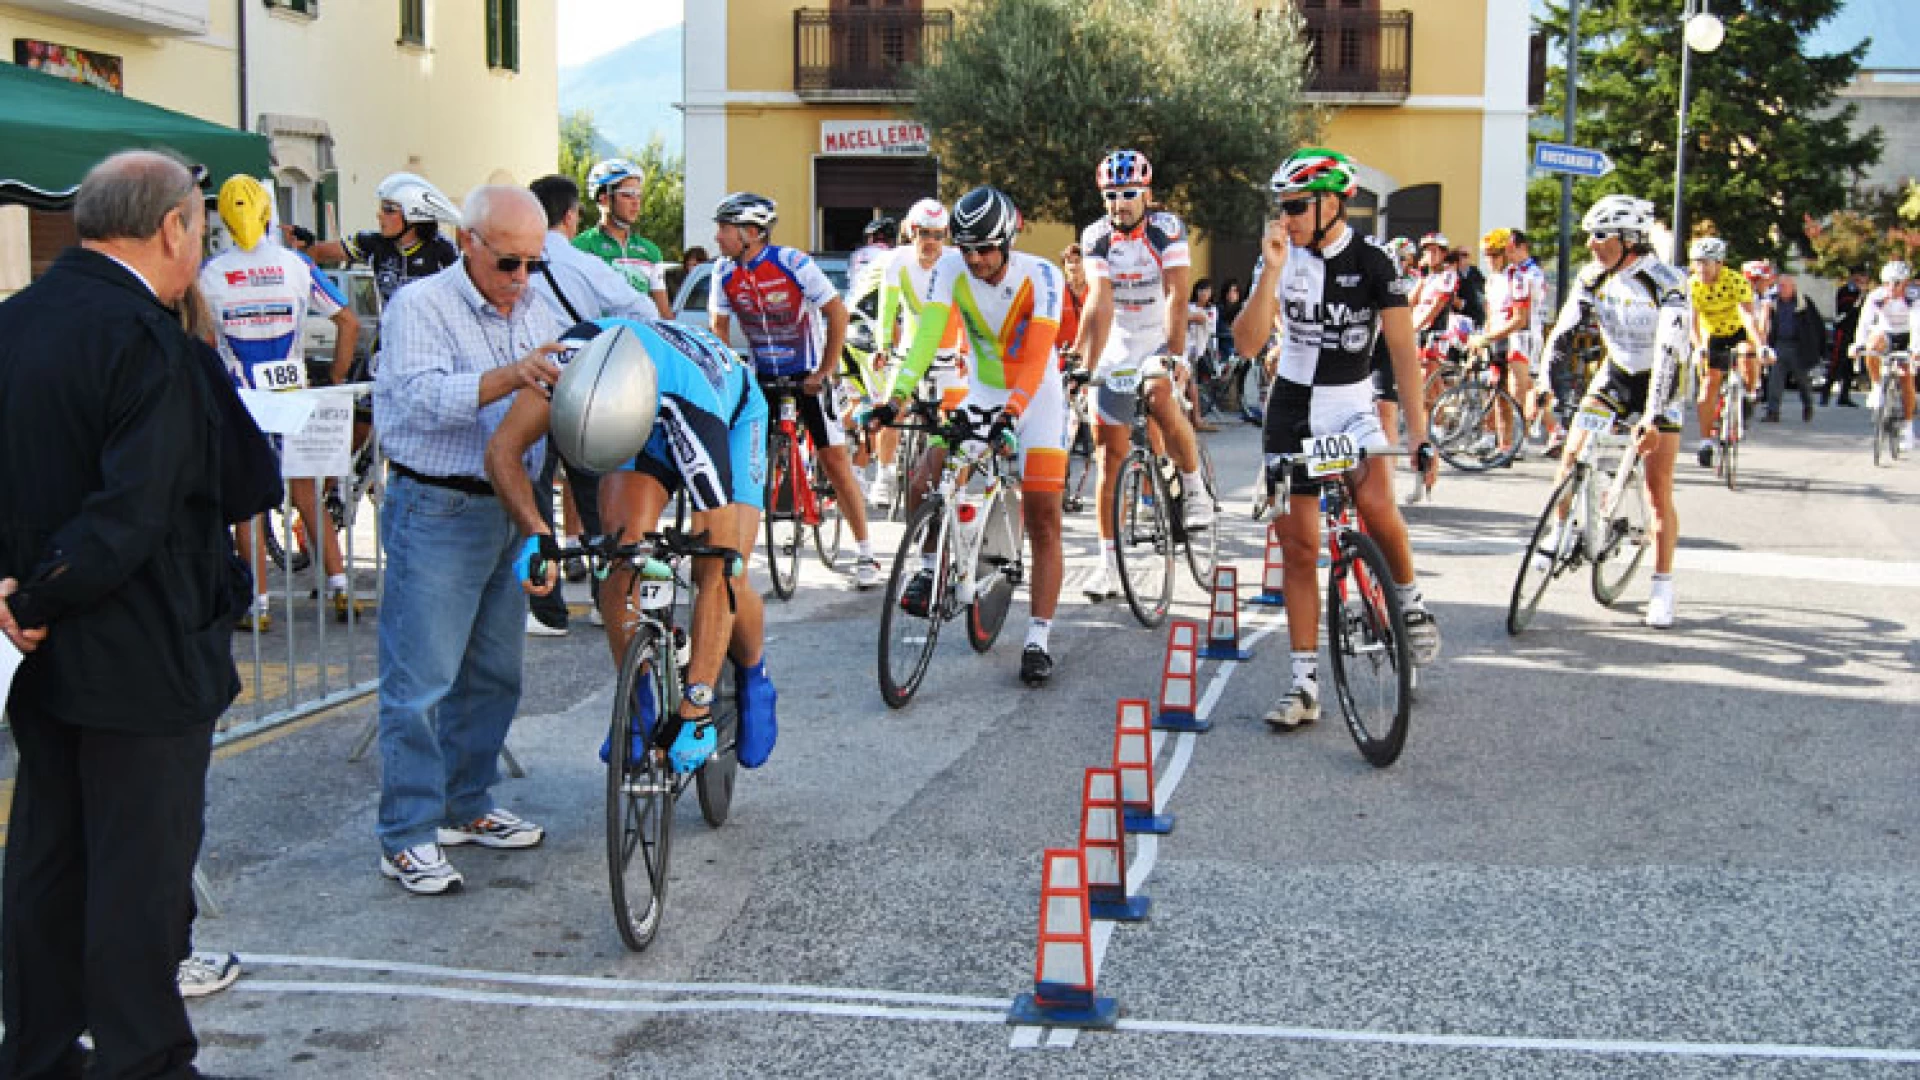 Sport: domenica la gara a cronometro di ciclismo a Colli a Volturno. Appuntamento promosso dal gruppo sportivo Di Sandro.